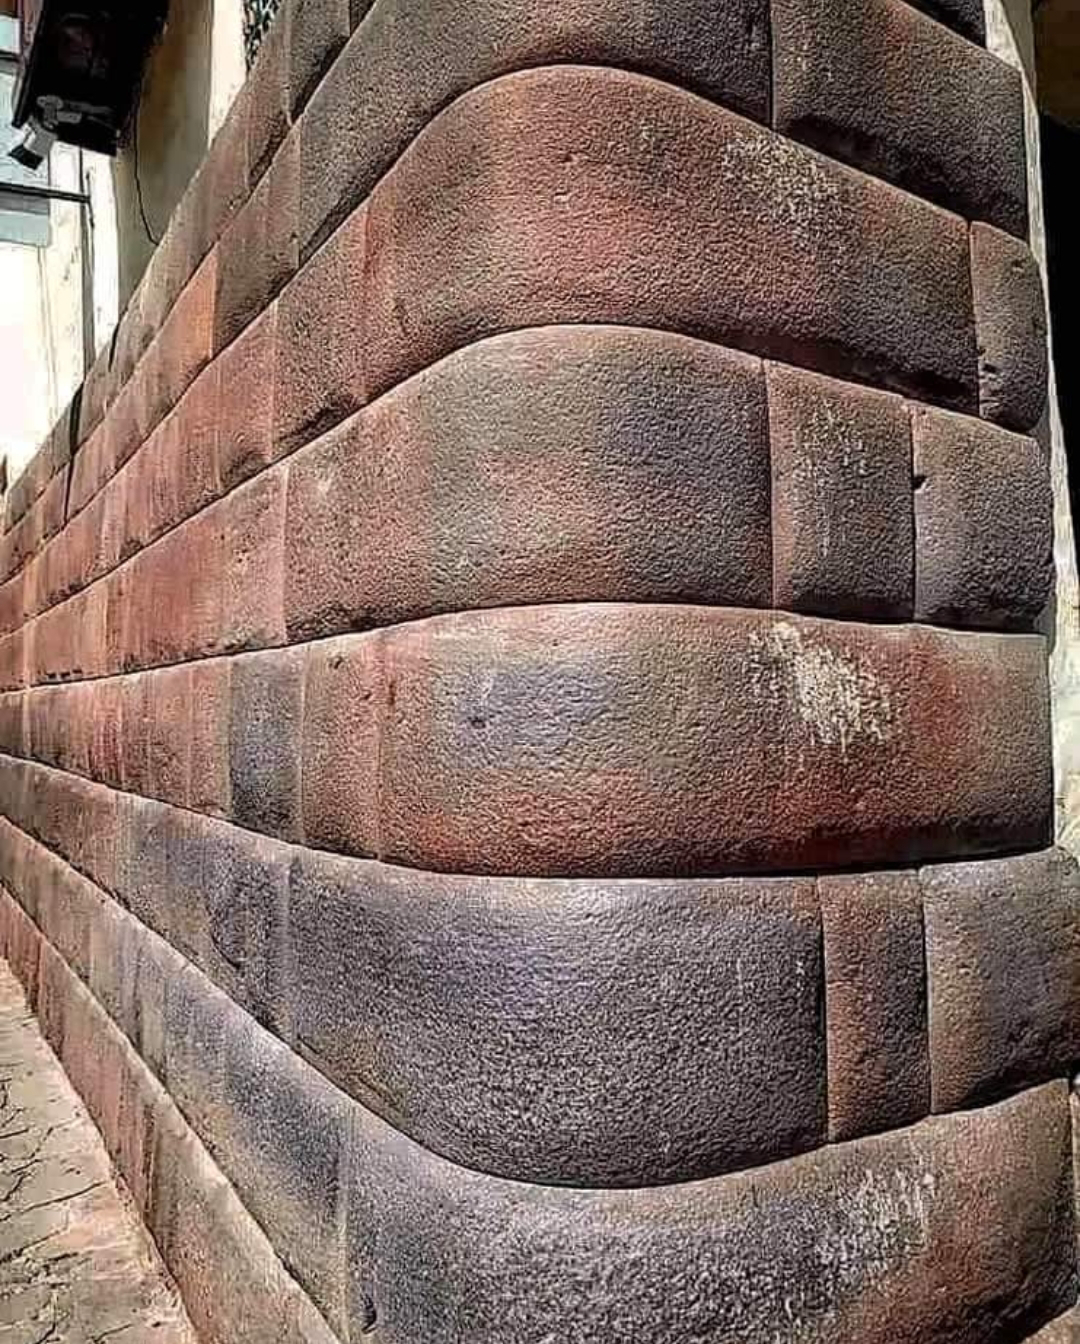 Sorprendente y hermoso ejemplo de mampostería antigua en piedra en Perú.